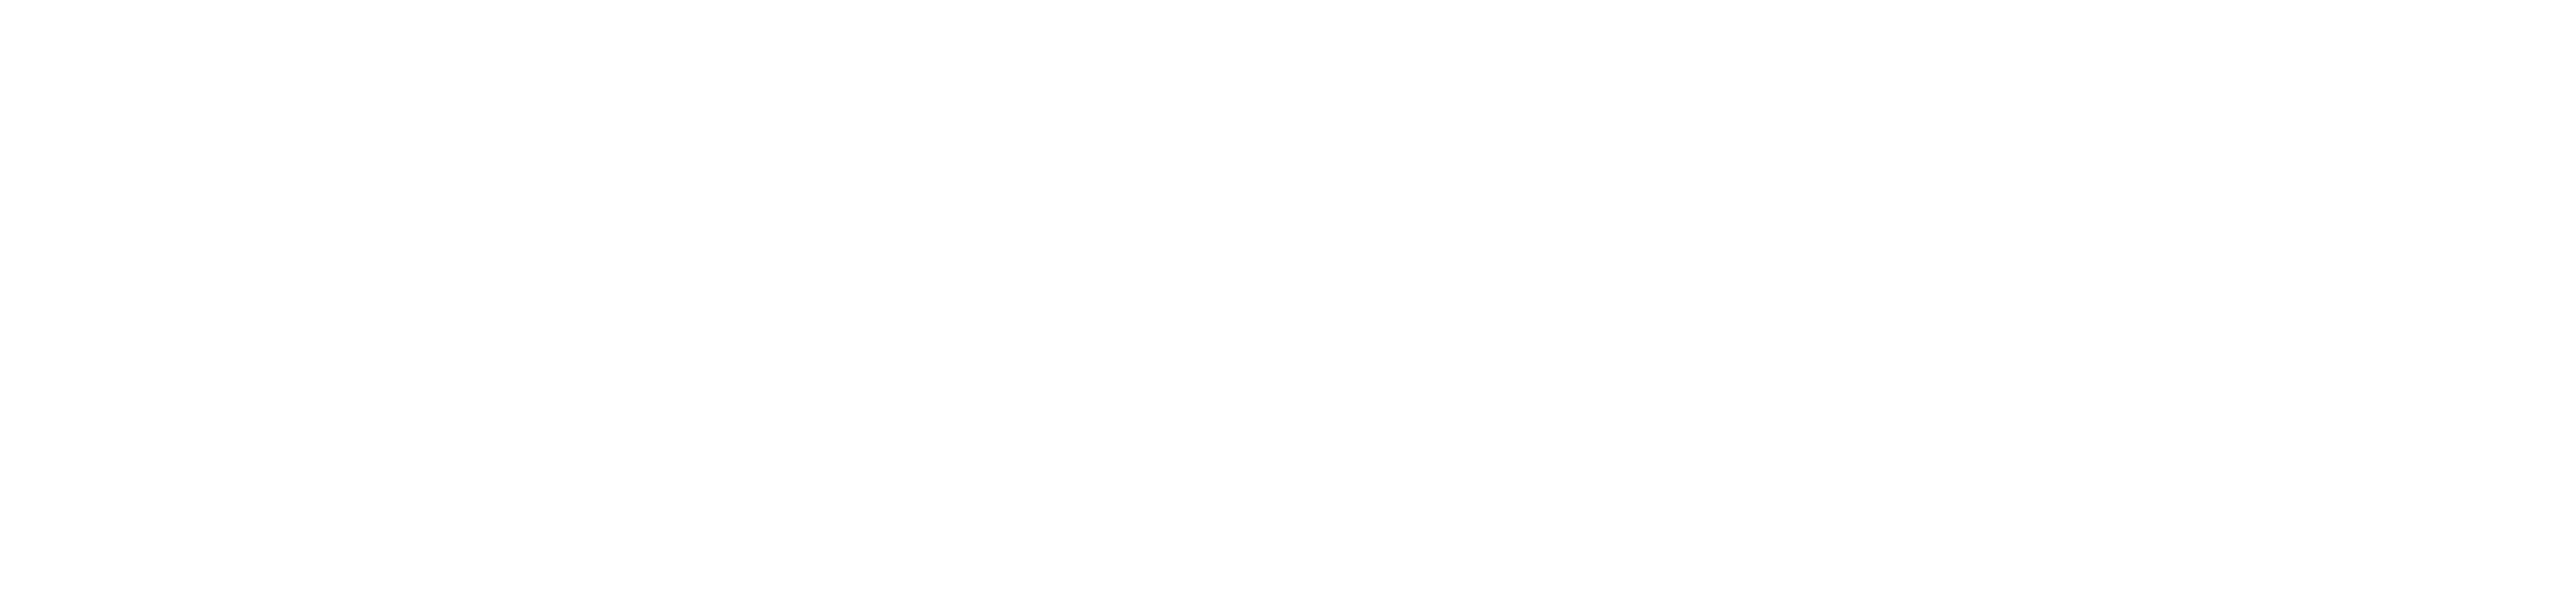 zurich_logo_white